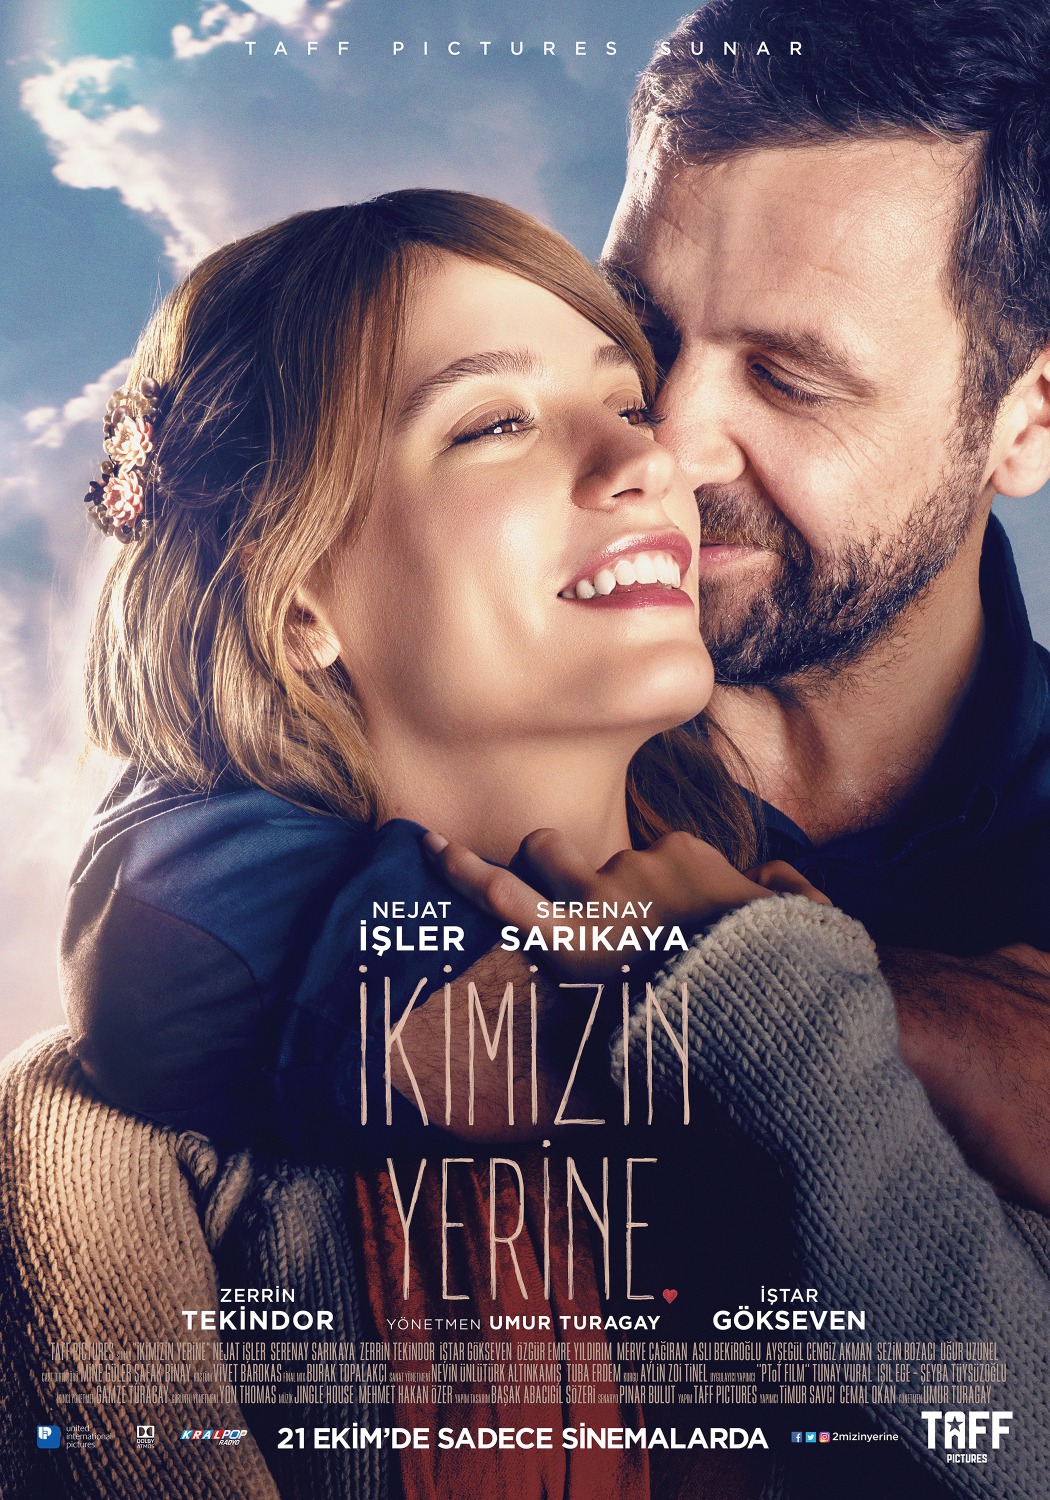 Extra Large Movie Poster Image for Ikimizin Yerine 